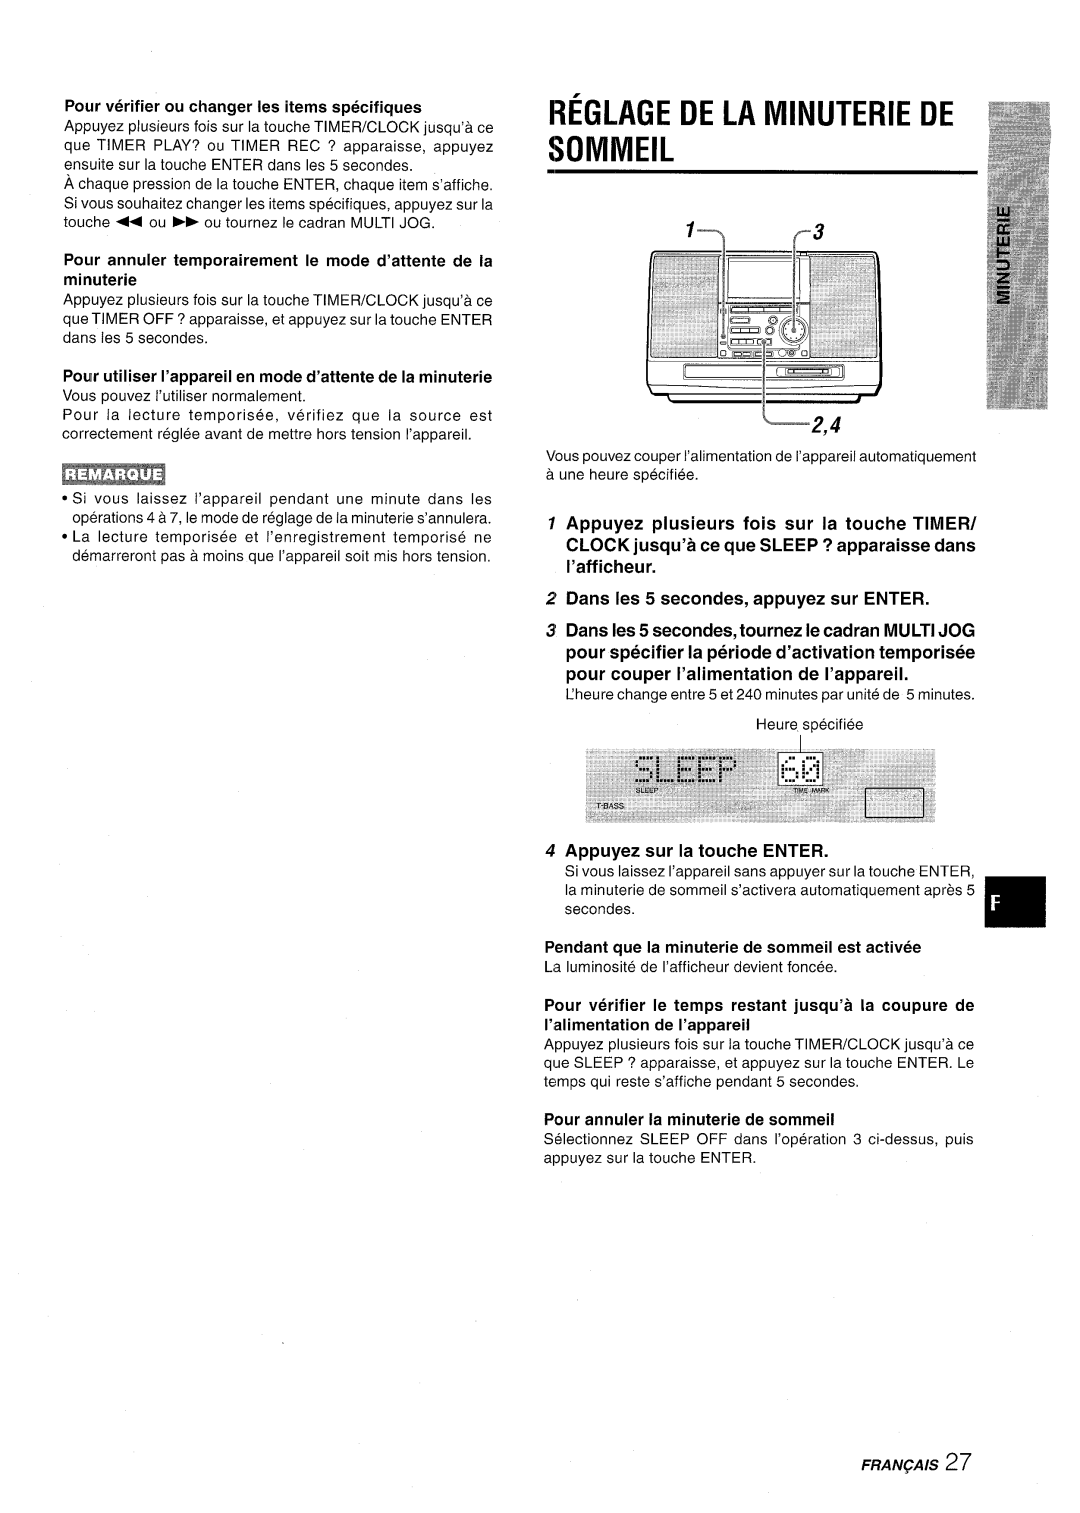 Aiwa CSD-MD50 manual Reglage De La Minuterie De Sommeil, ‘2,4, Pour verifier ou changer Ies items specifiques, Fran~Ais 